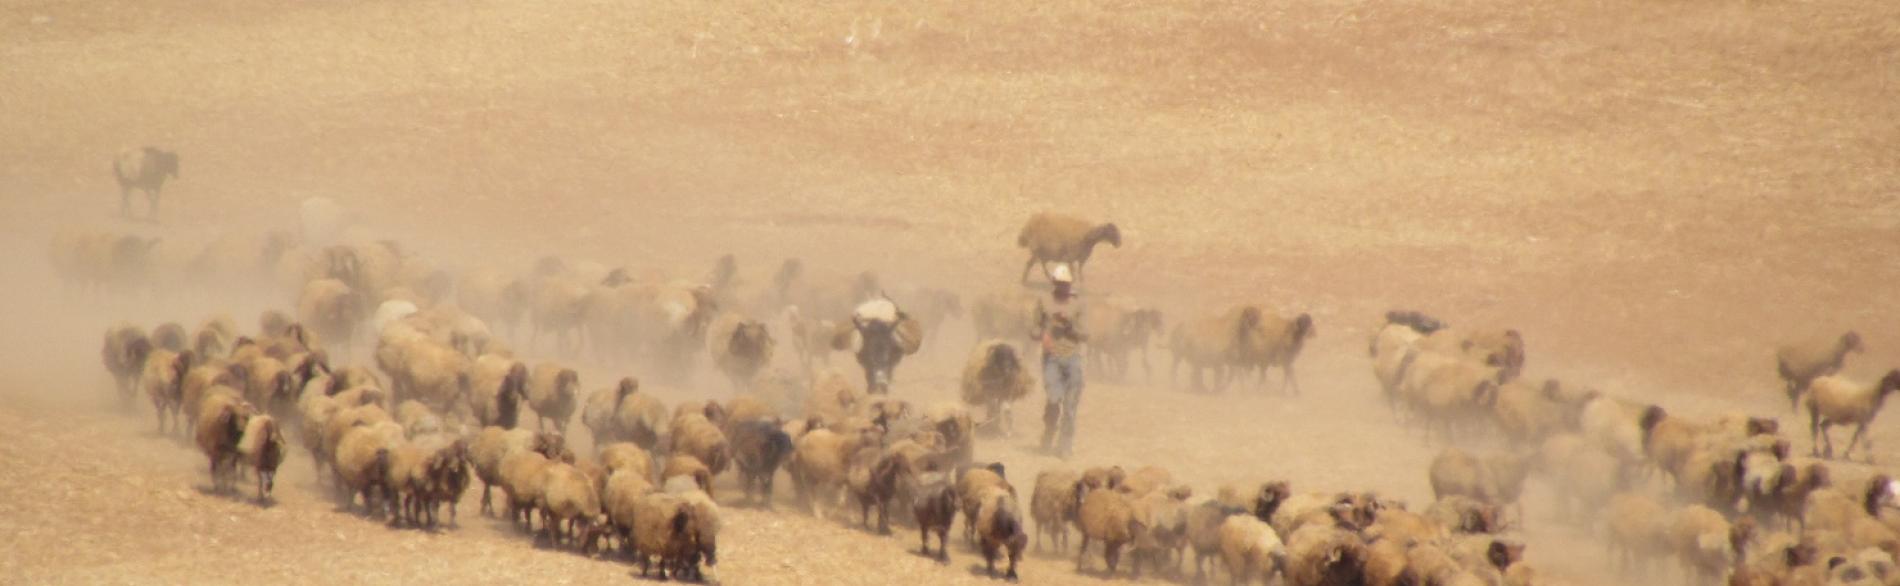 Palestinian man herding his livestock outside of Khirbet ar Ras al Ahmar, Jordan Valley (3 October 2019).  ©  Photo by OCHA